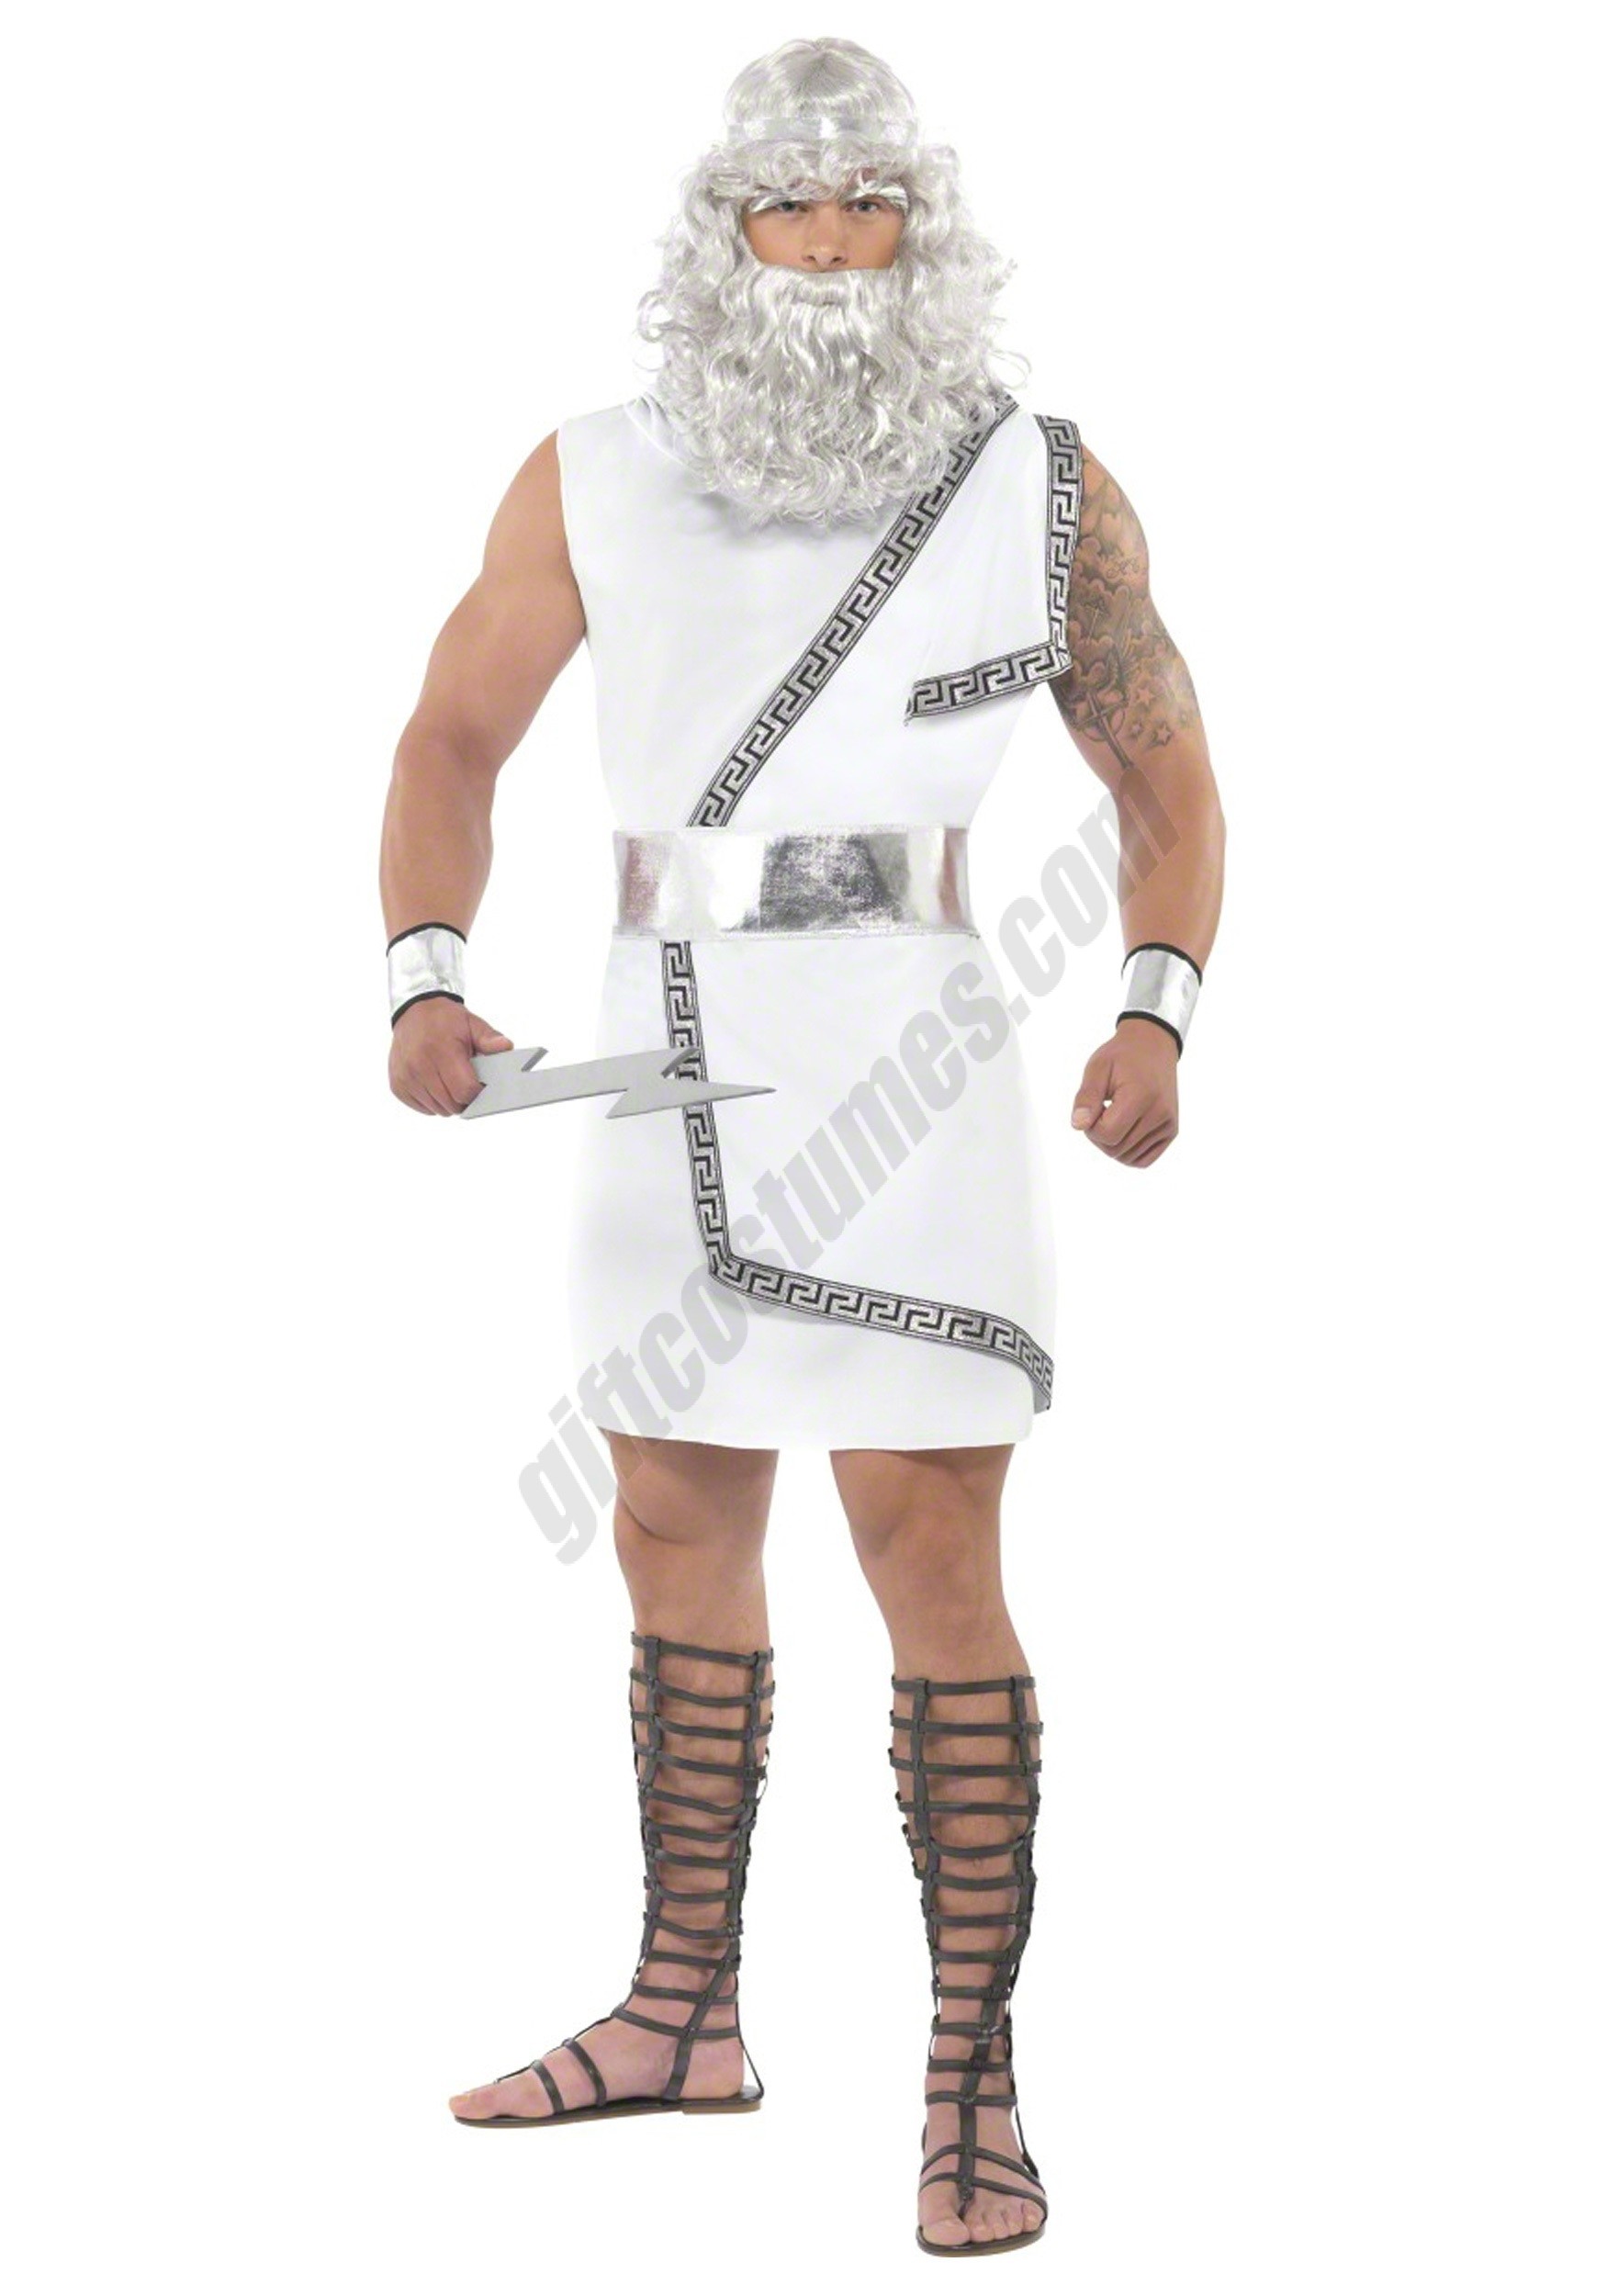 Zeus Costume Promotions - Zeus Costume Promotions